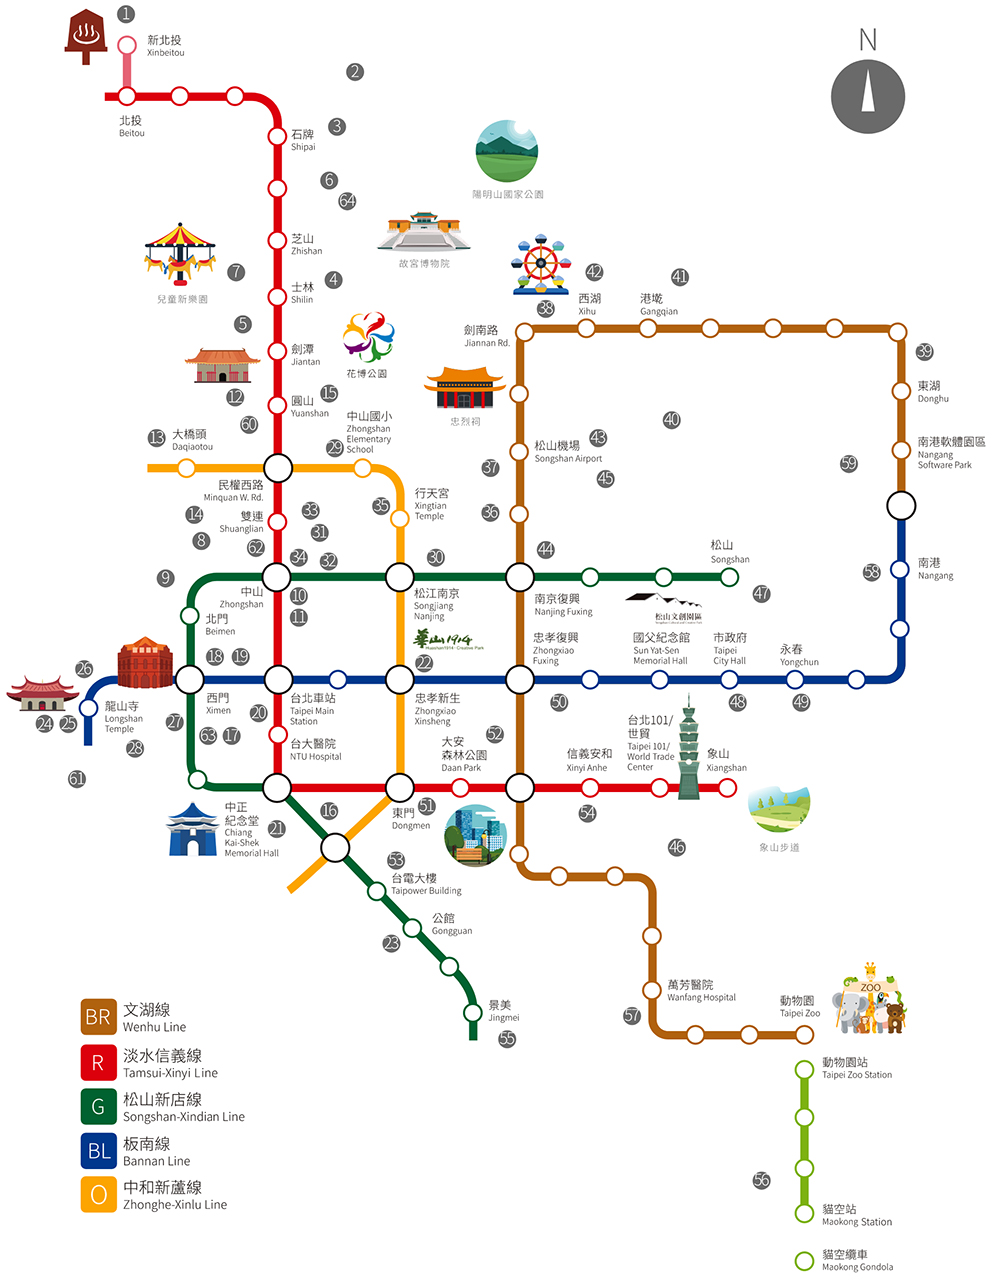 台北市商圈捷運地圖